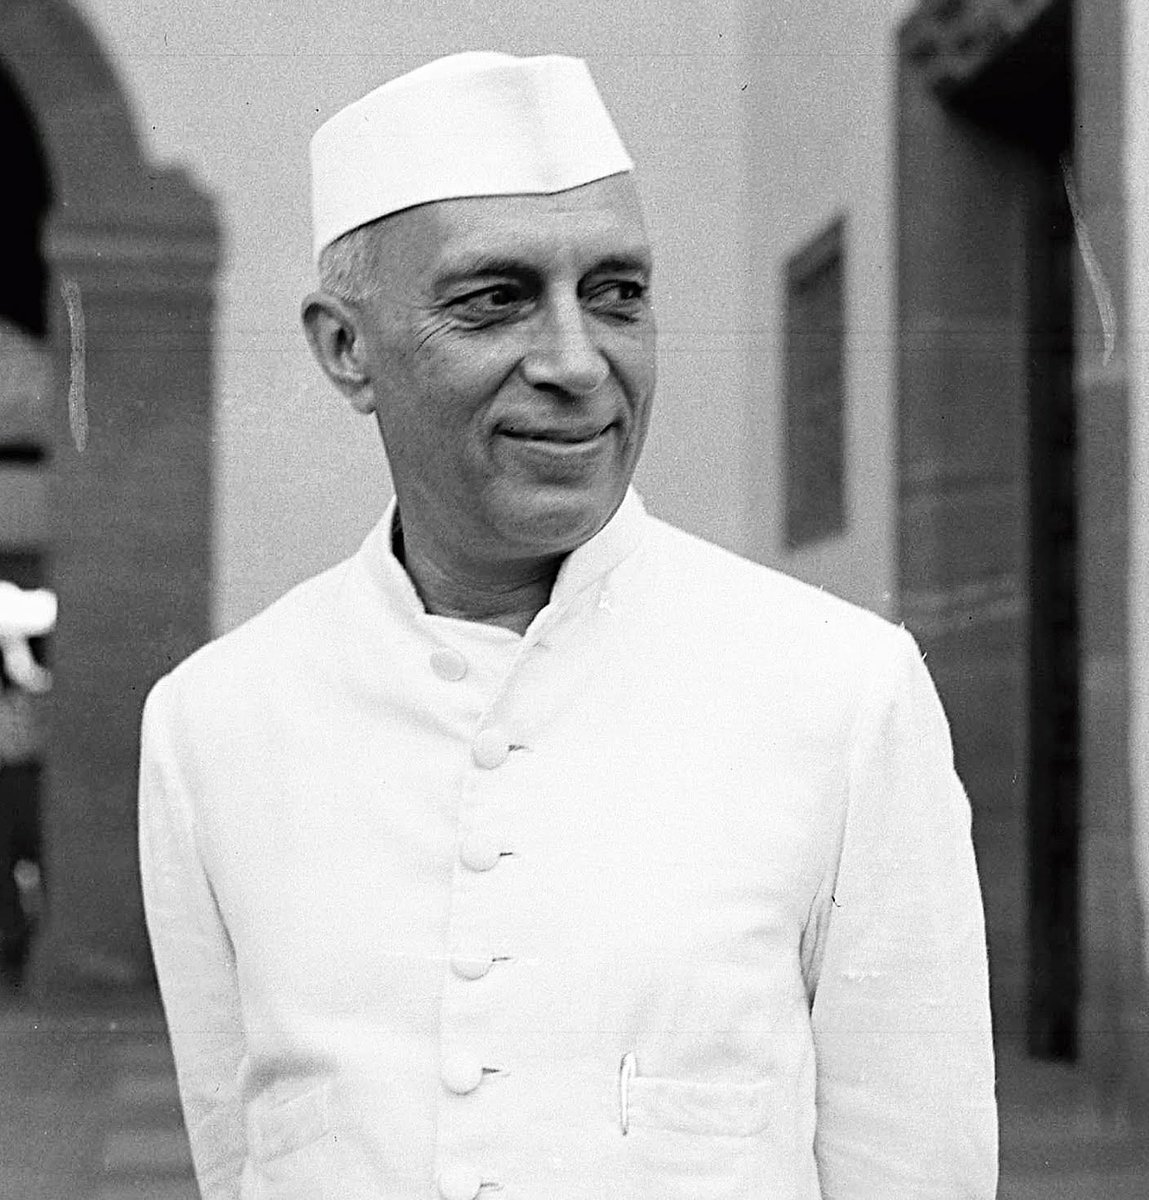 भारत के प्रथम प्रधानमंत्री पं. जवाहरलाल नेहरू जी की पुण्यतिथि पर सादर नमन।